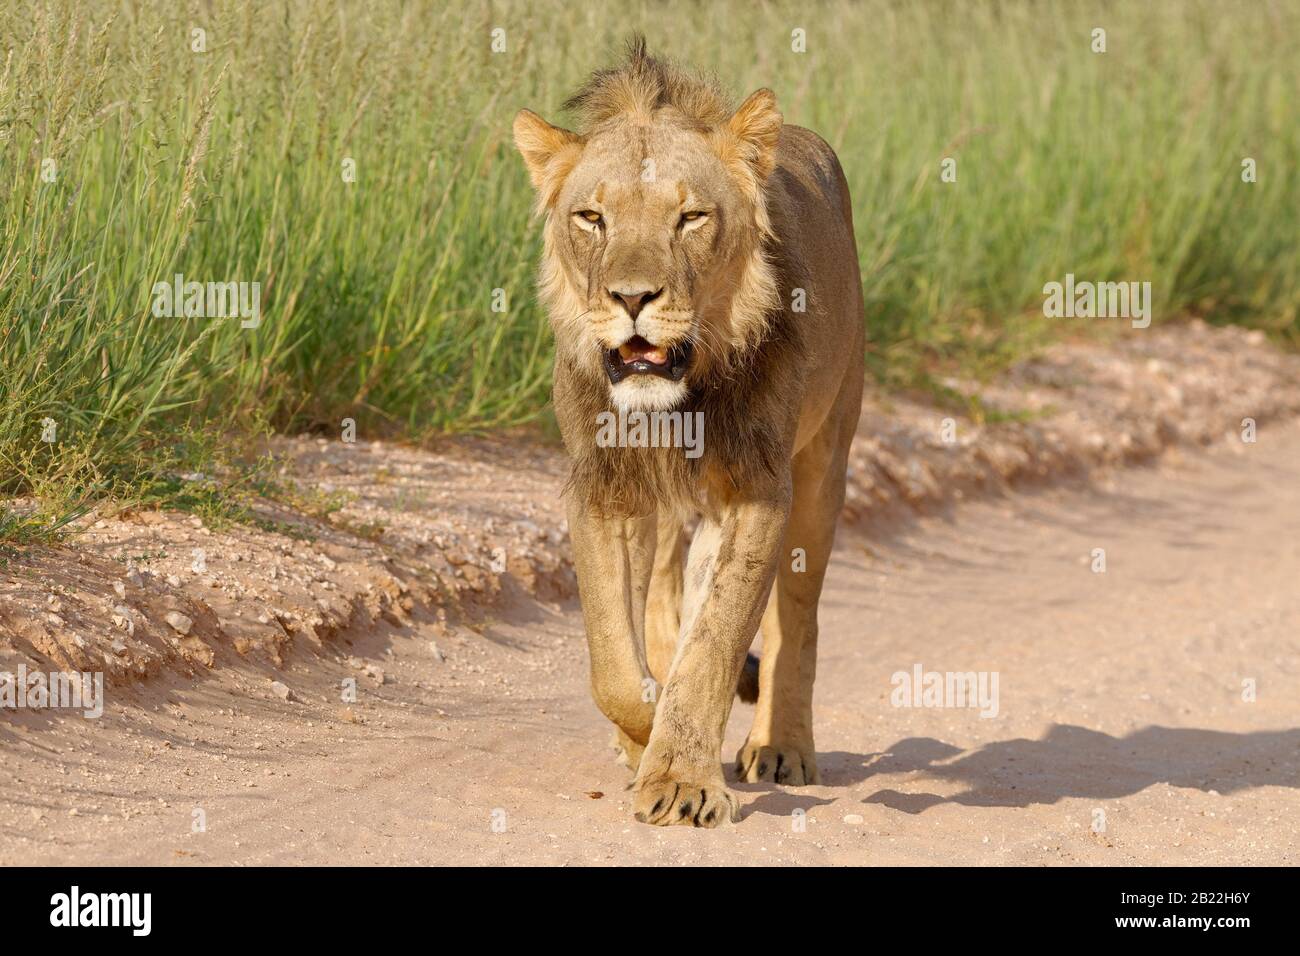 Lion noir (Panthera leo vernayi), homme adulte, marchant le long d'une route de terre, Kgalagadi TransFrontier Park, Northern Cape, Afrique du Sud, Afrique Banque D'Images